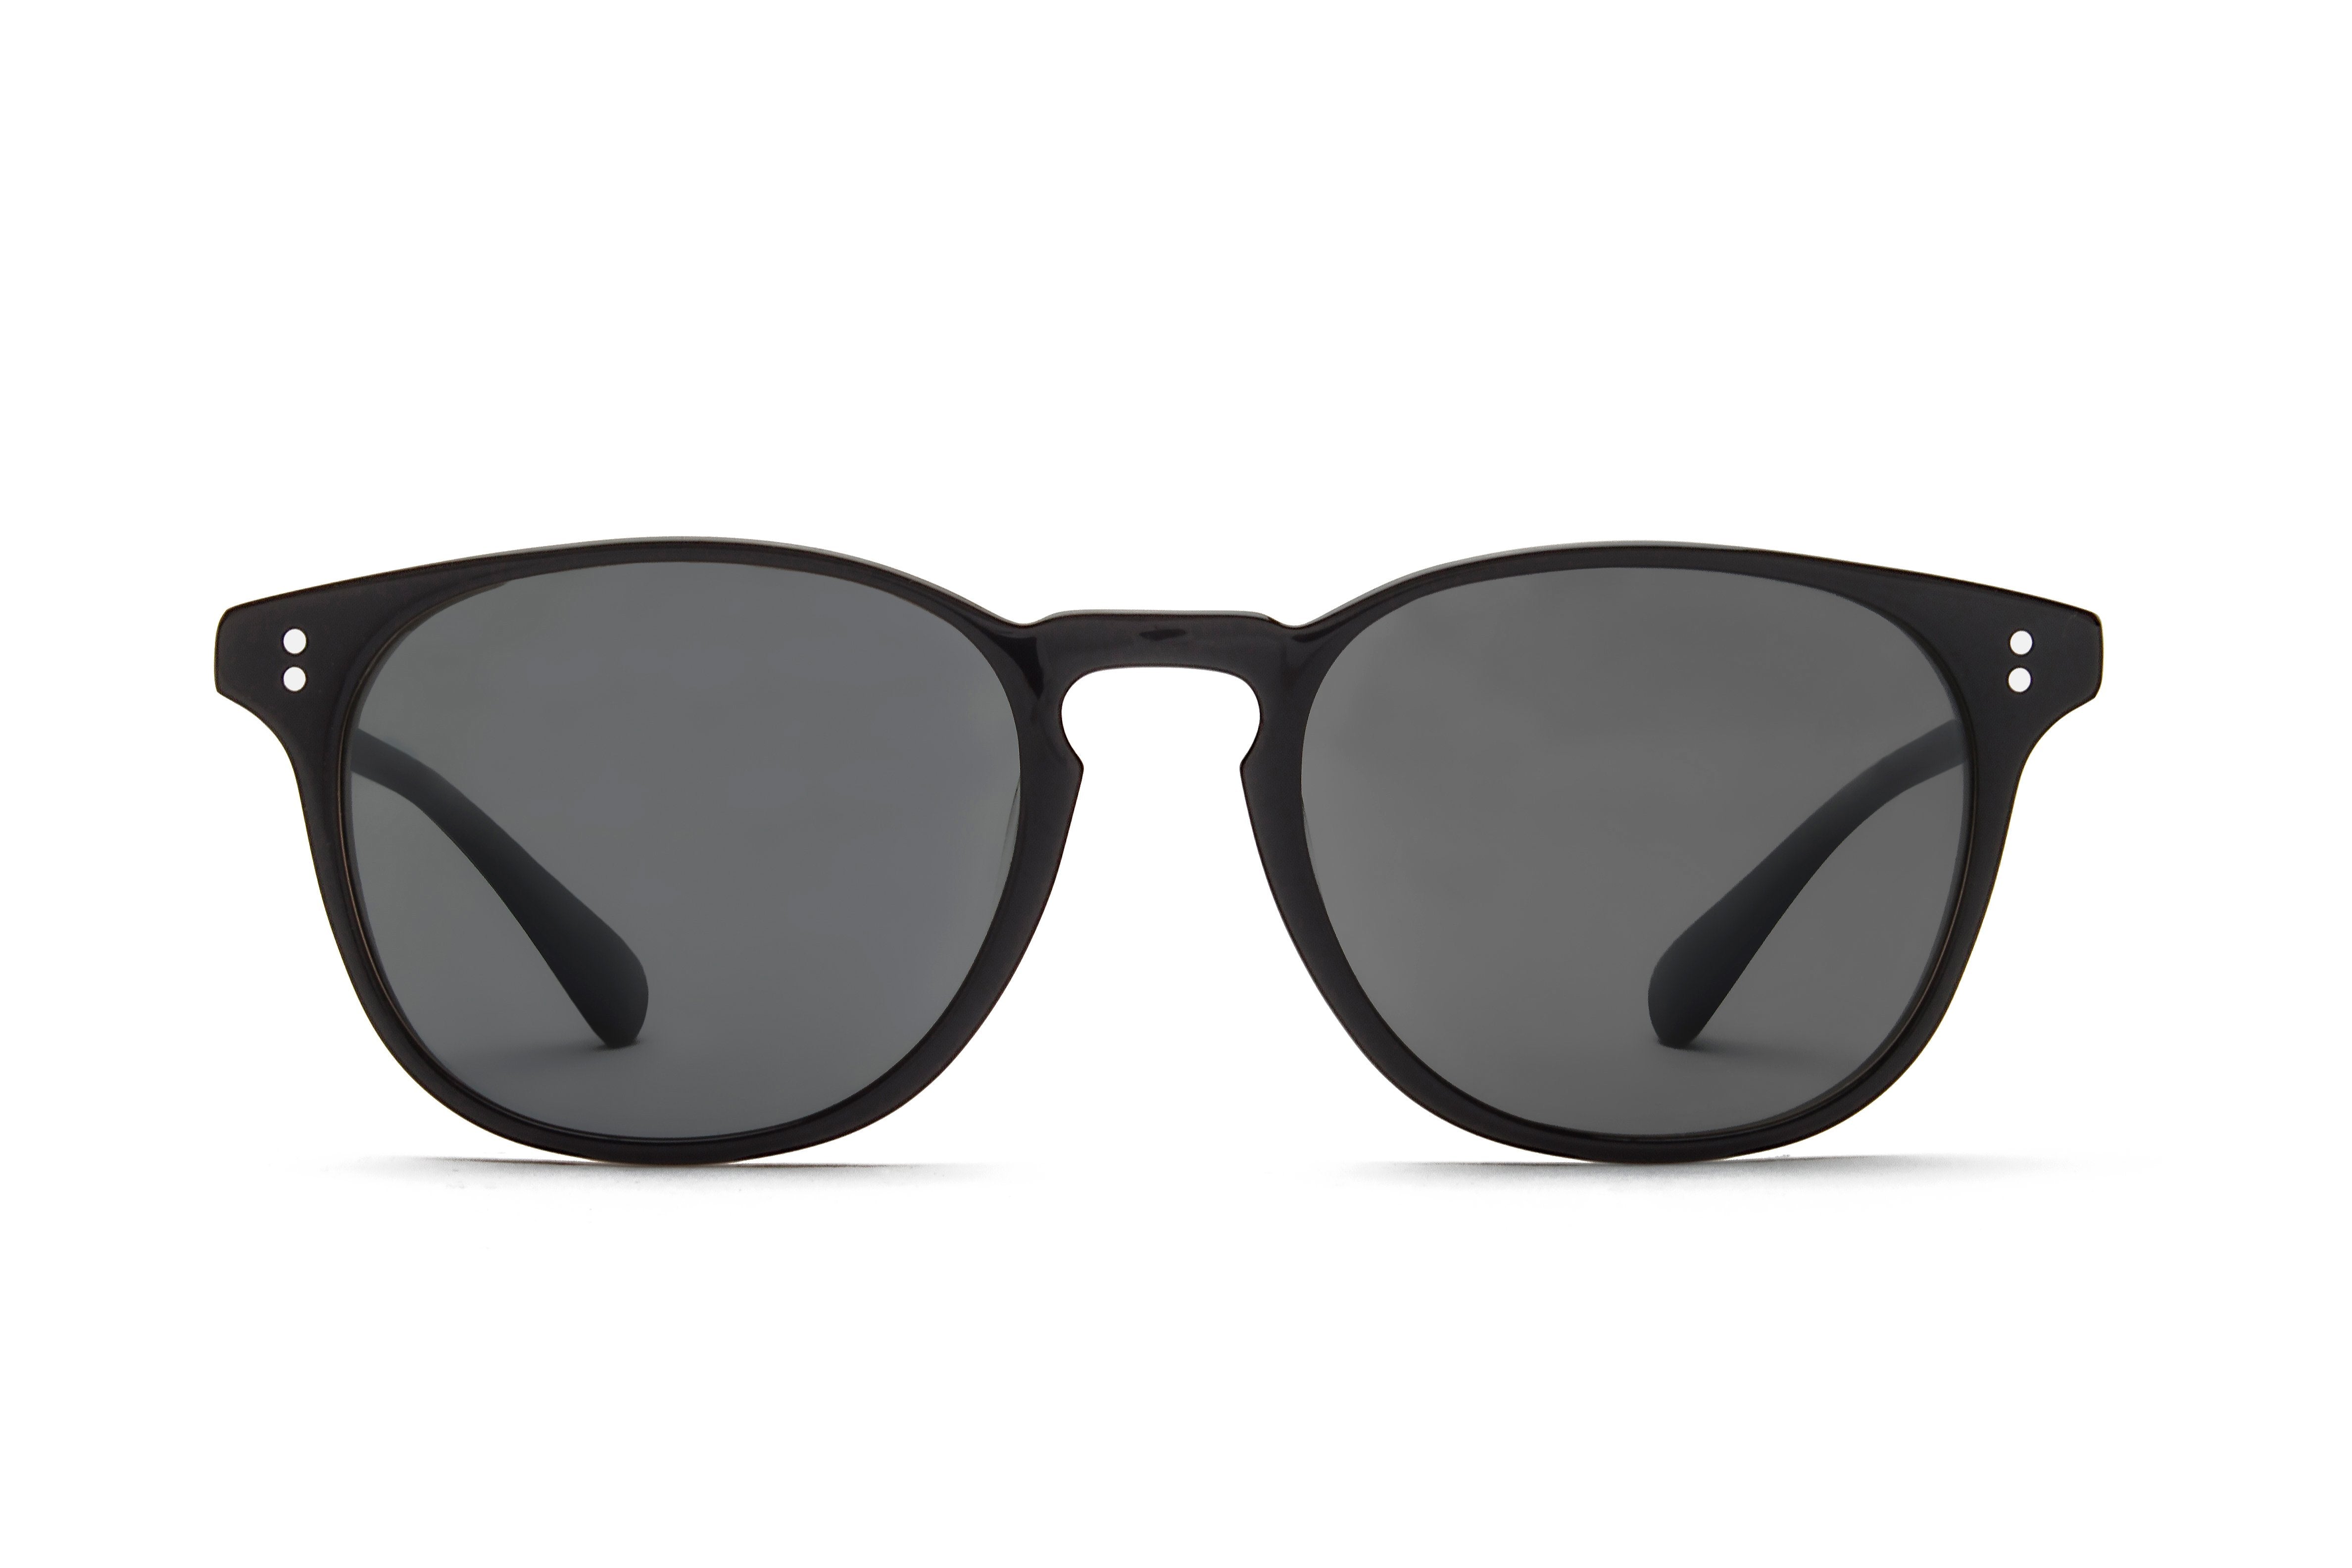 Jet Black Round Acetate Sunglasses Online - Full-Rim - Shadow - 1.6 Basic Tint Lenses